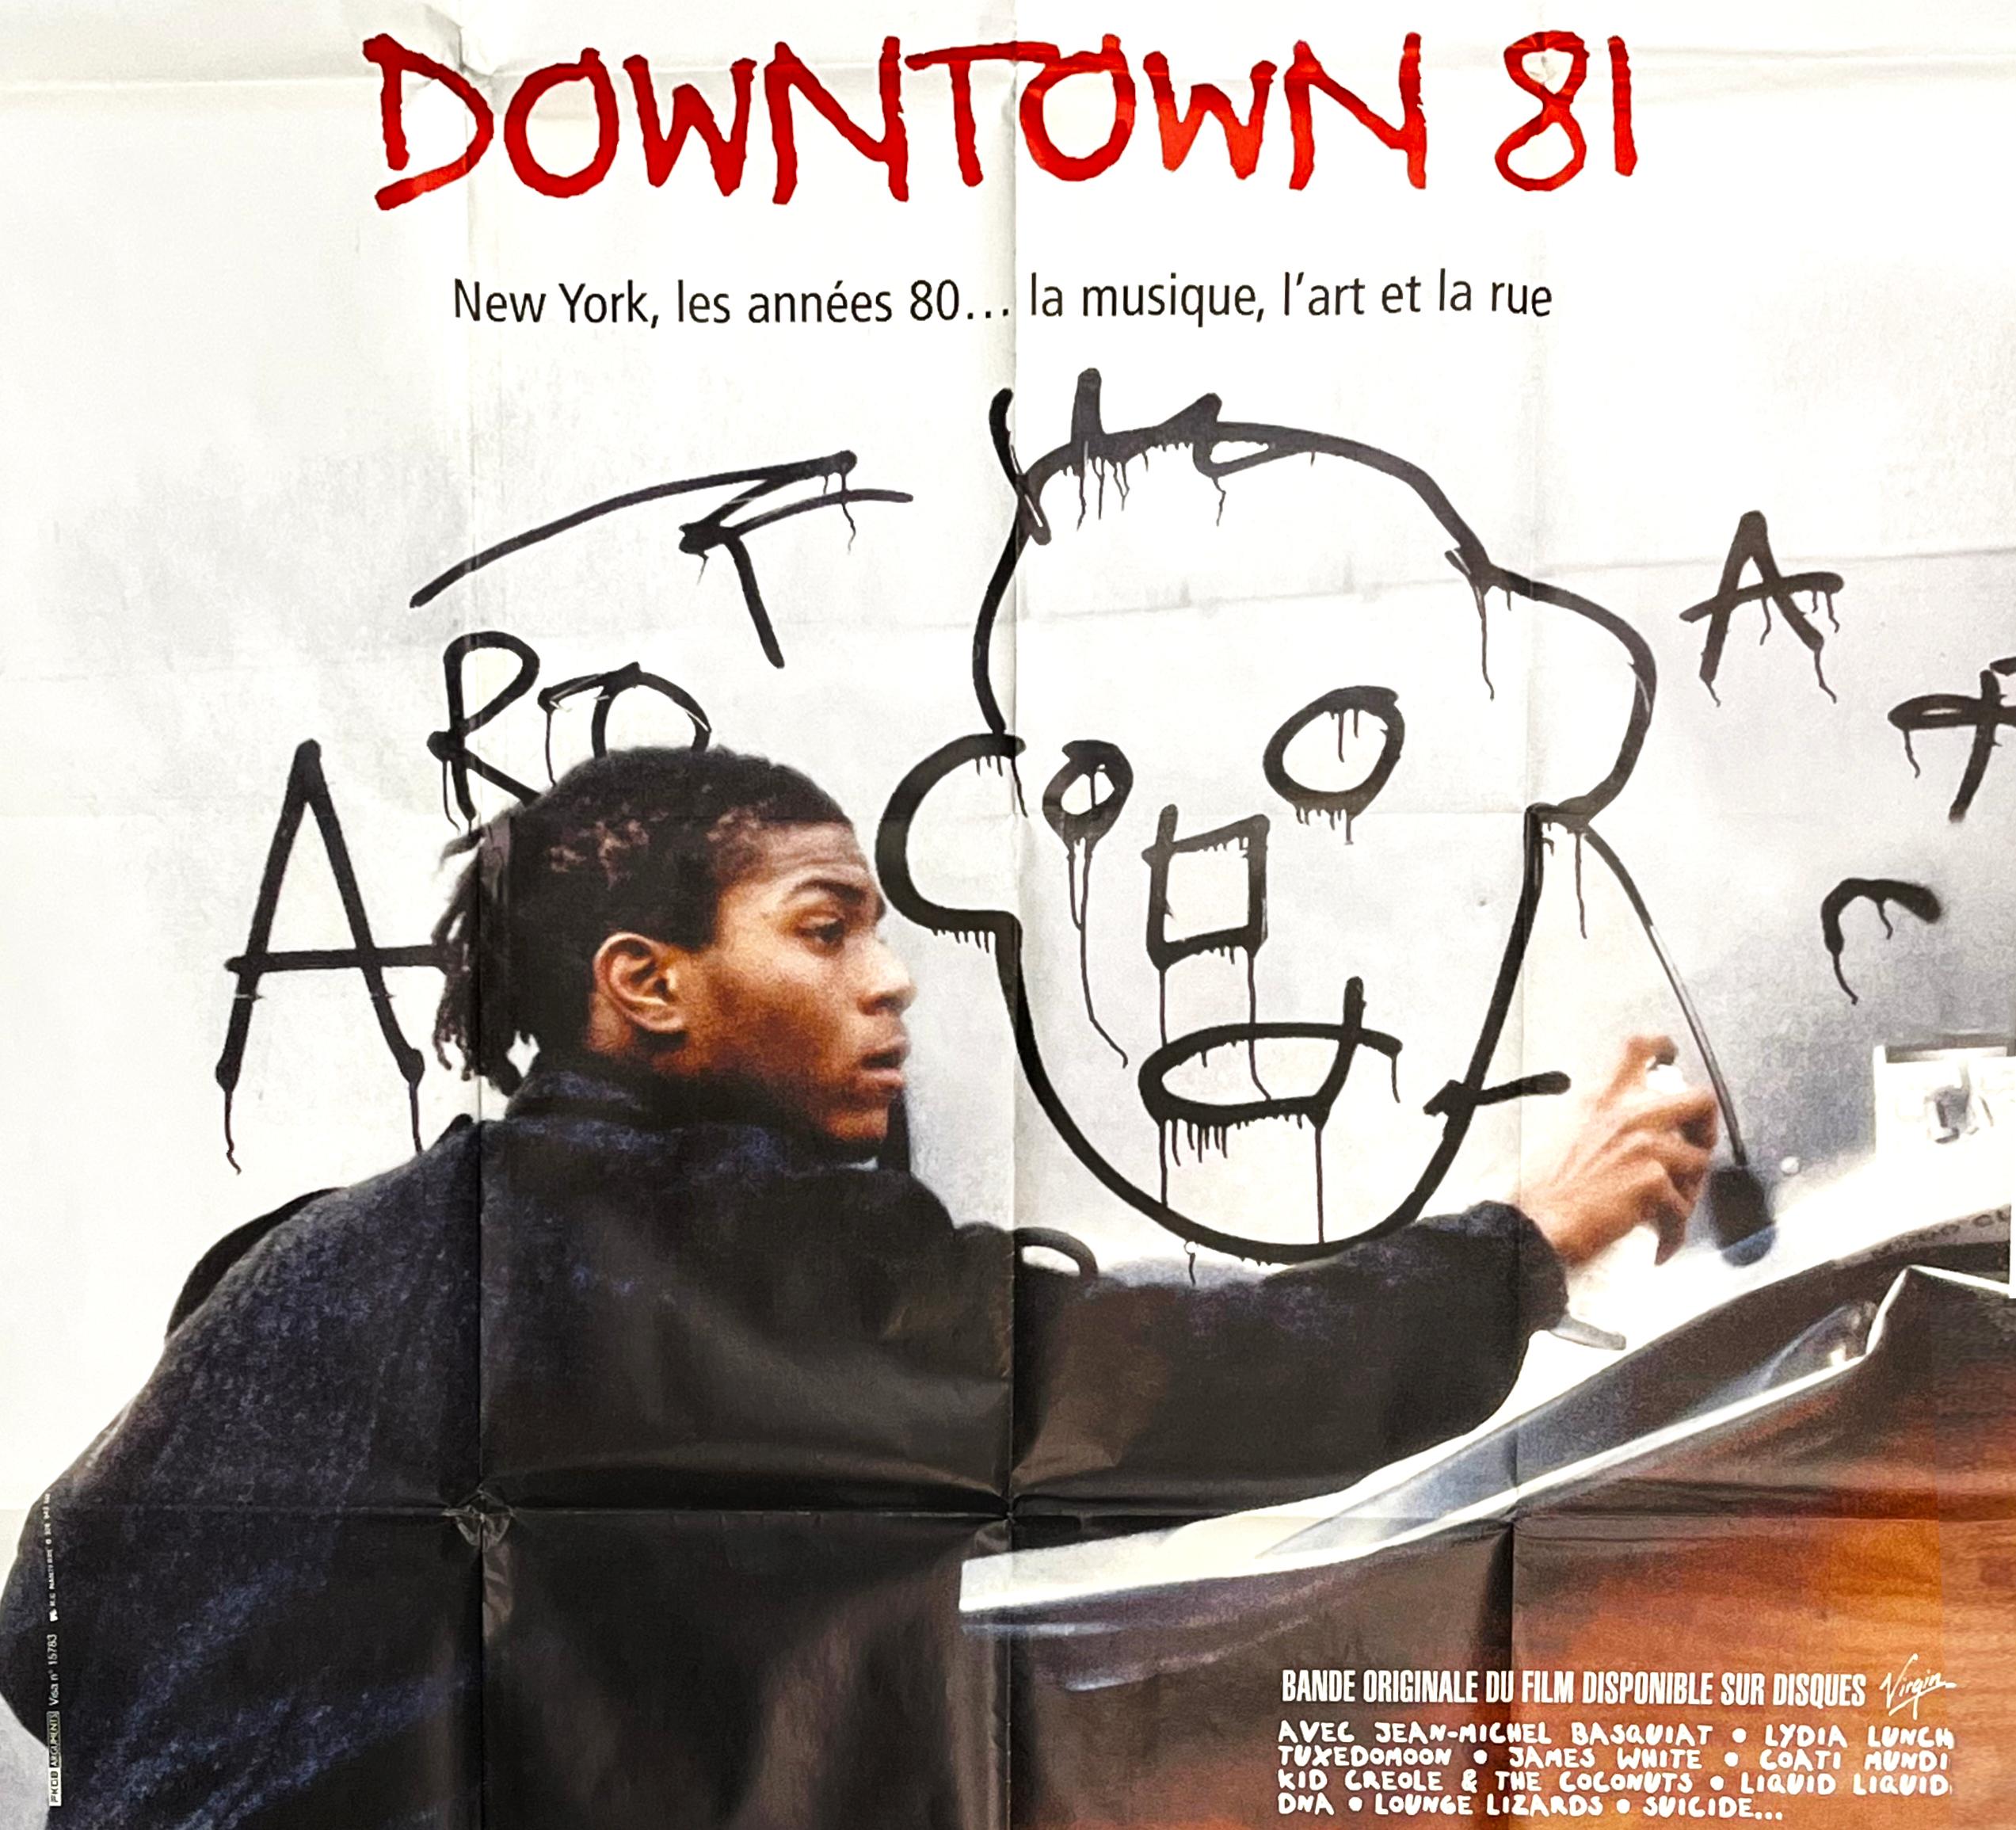 Basquiat Downtown 81 film poster (Basquiat movie)  - Print by Jean-Michel Basquiat